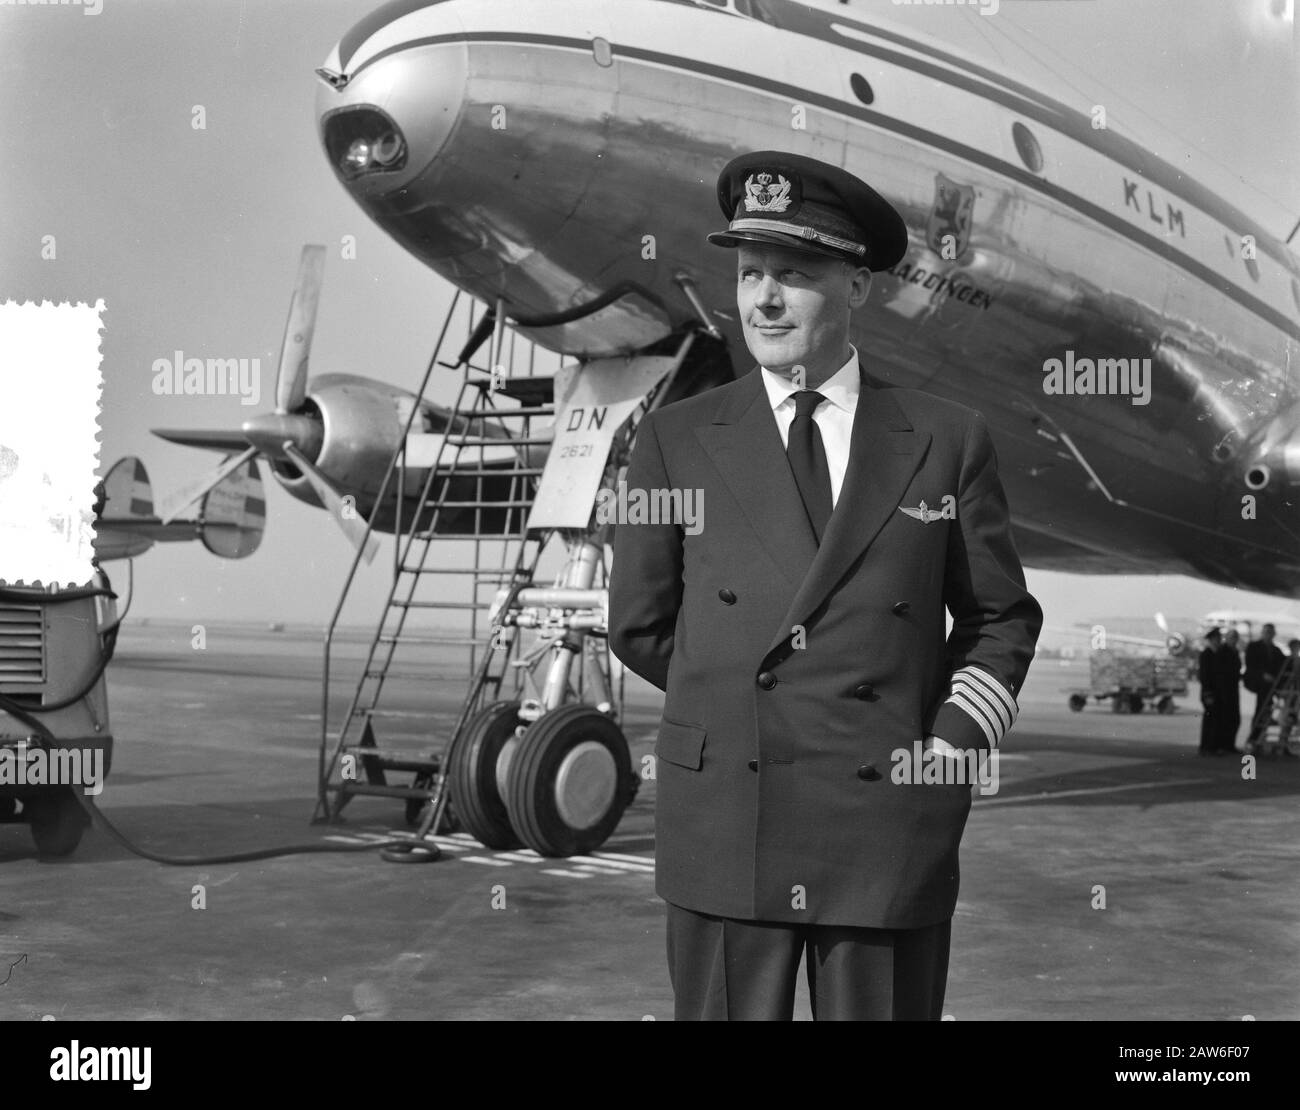 Capitaine de KLM LA Brugman commanddorevlieger avec réalisateur de vol A. Bach Date: 12 mars 1957 mots clés: Directeur Nom De La Personne: A. Bach Banque D'Images